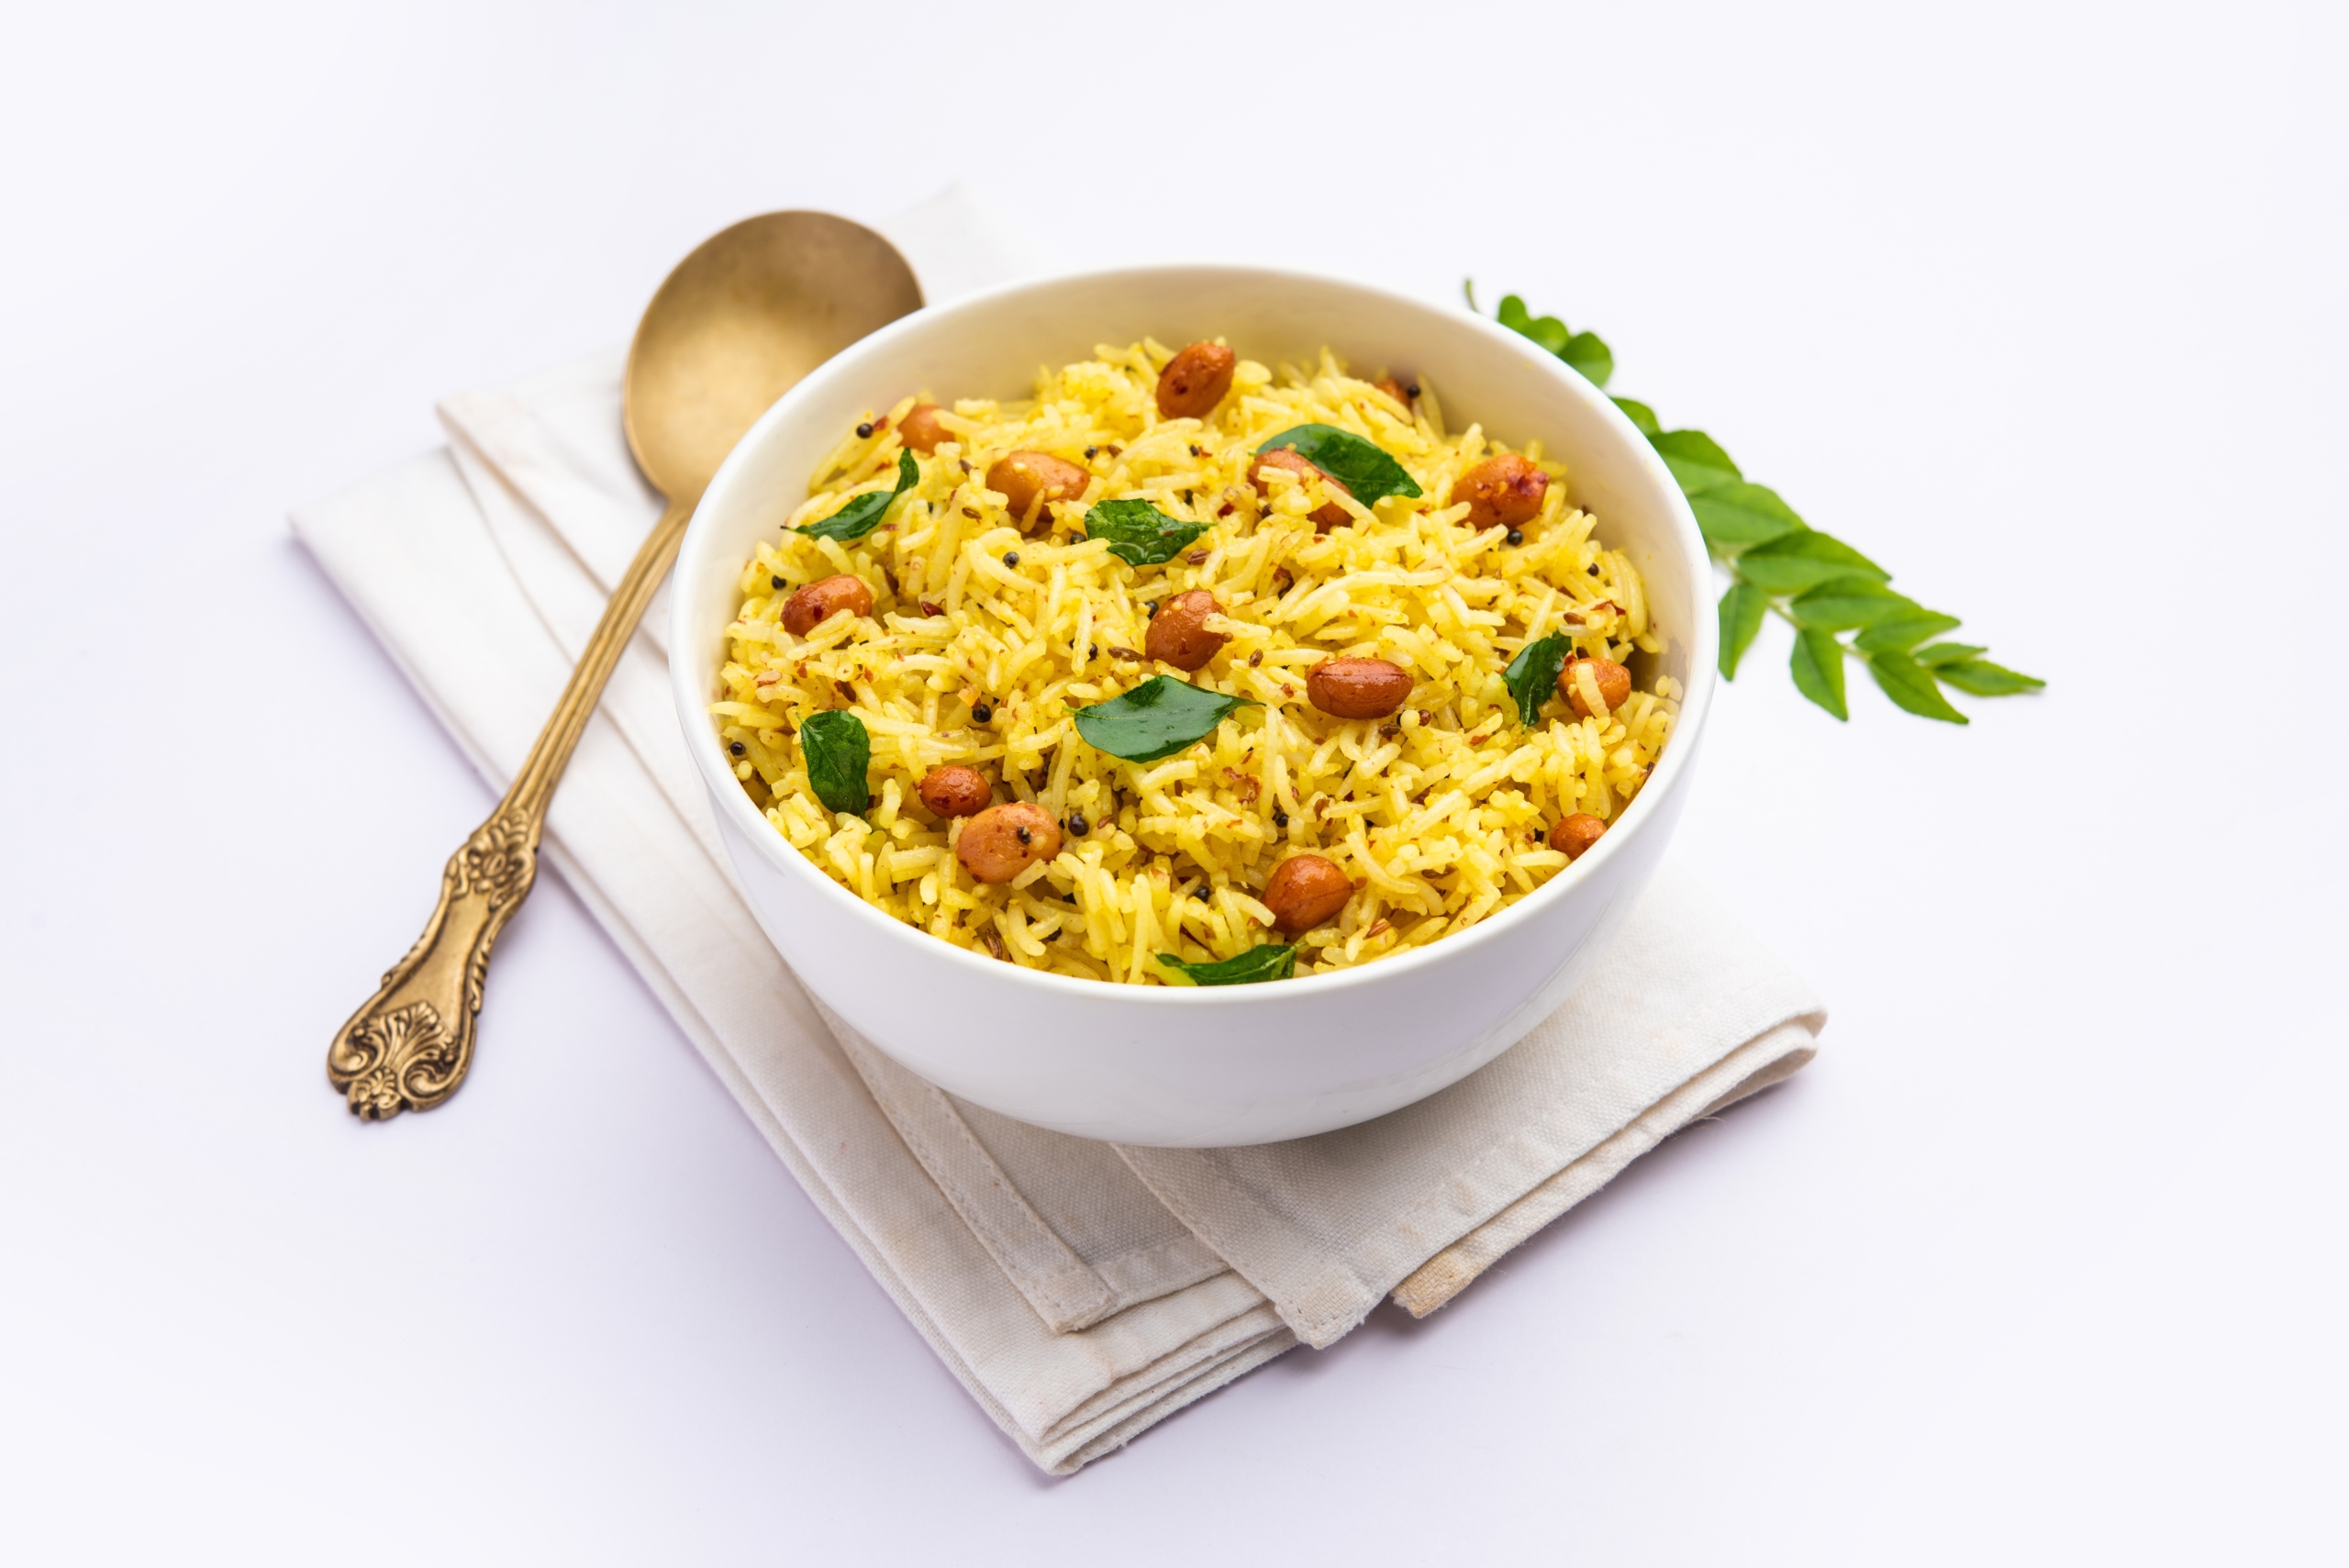 Thêm cà ri và các gia vị khác vào phần cơm còn thừa, nấu thành cơm vàng, cơm lứt v.v., dù không có đồ ăn kèm cũng rất ngon. (Ảnh: Shutterstock)